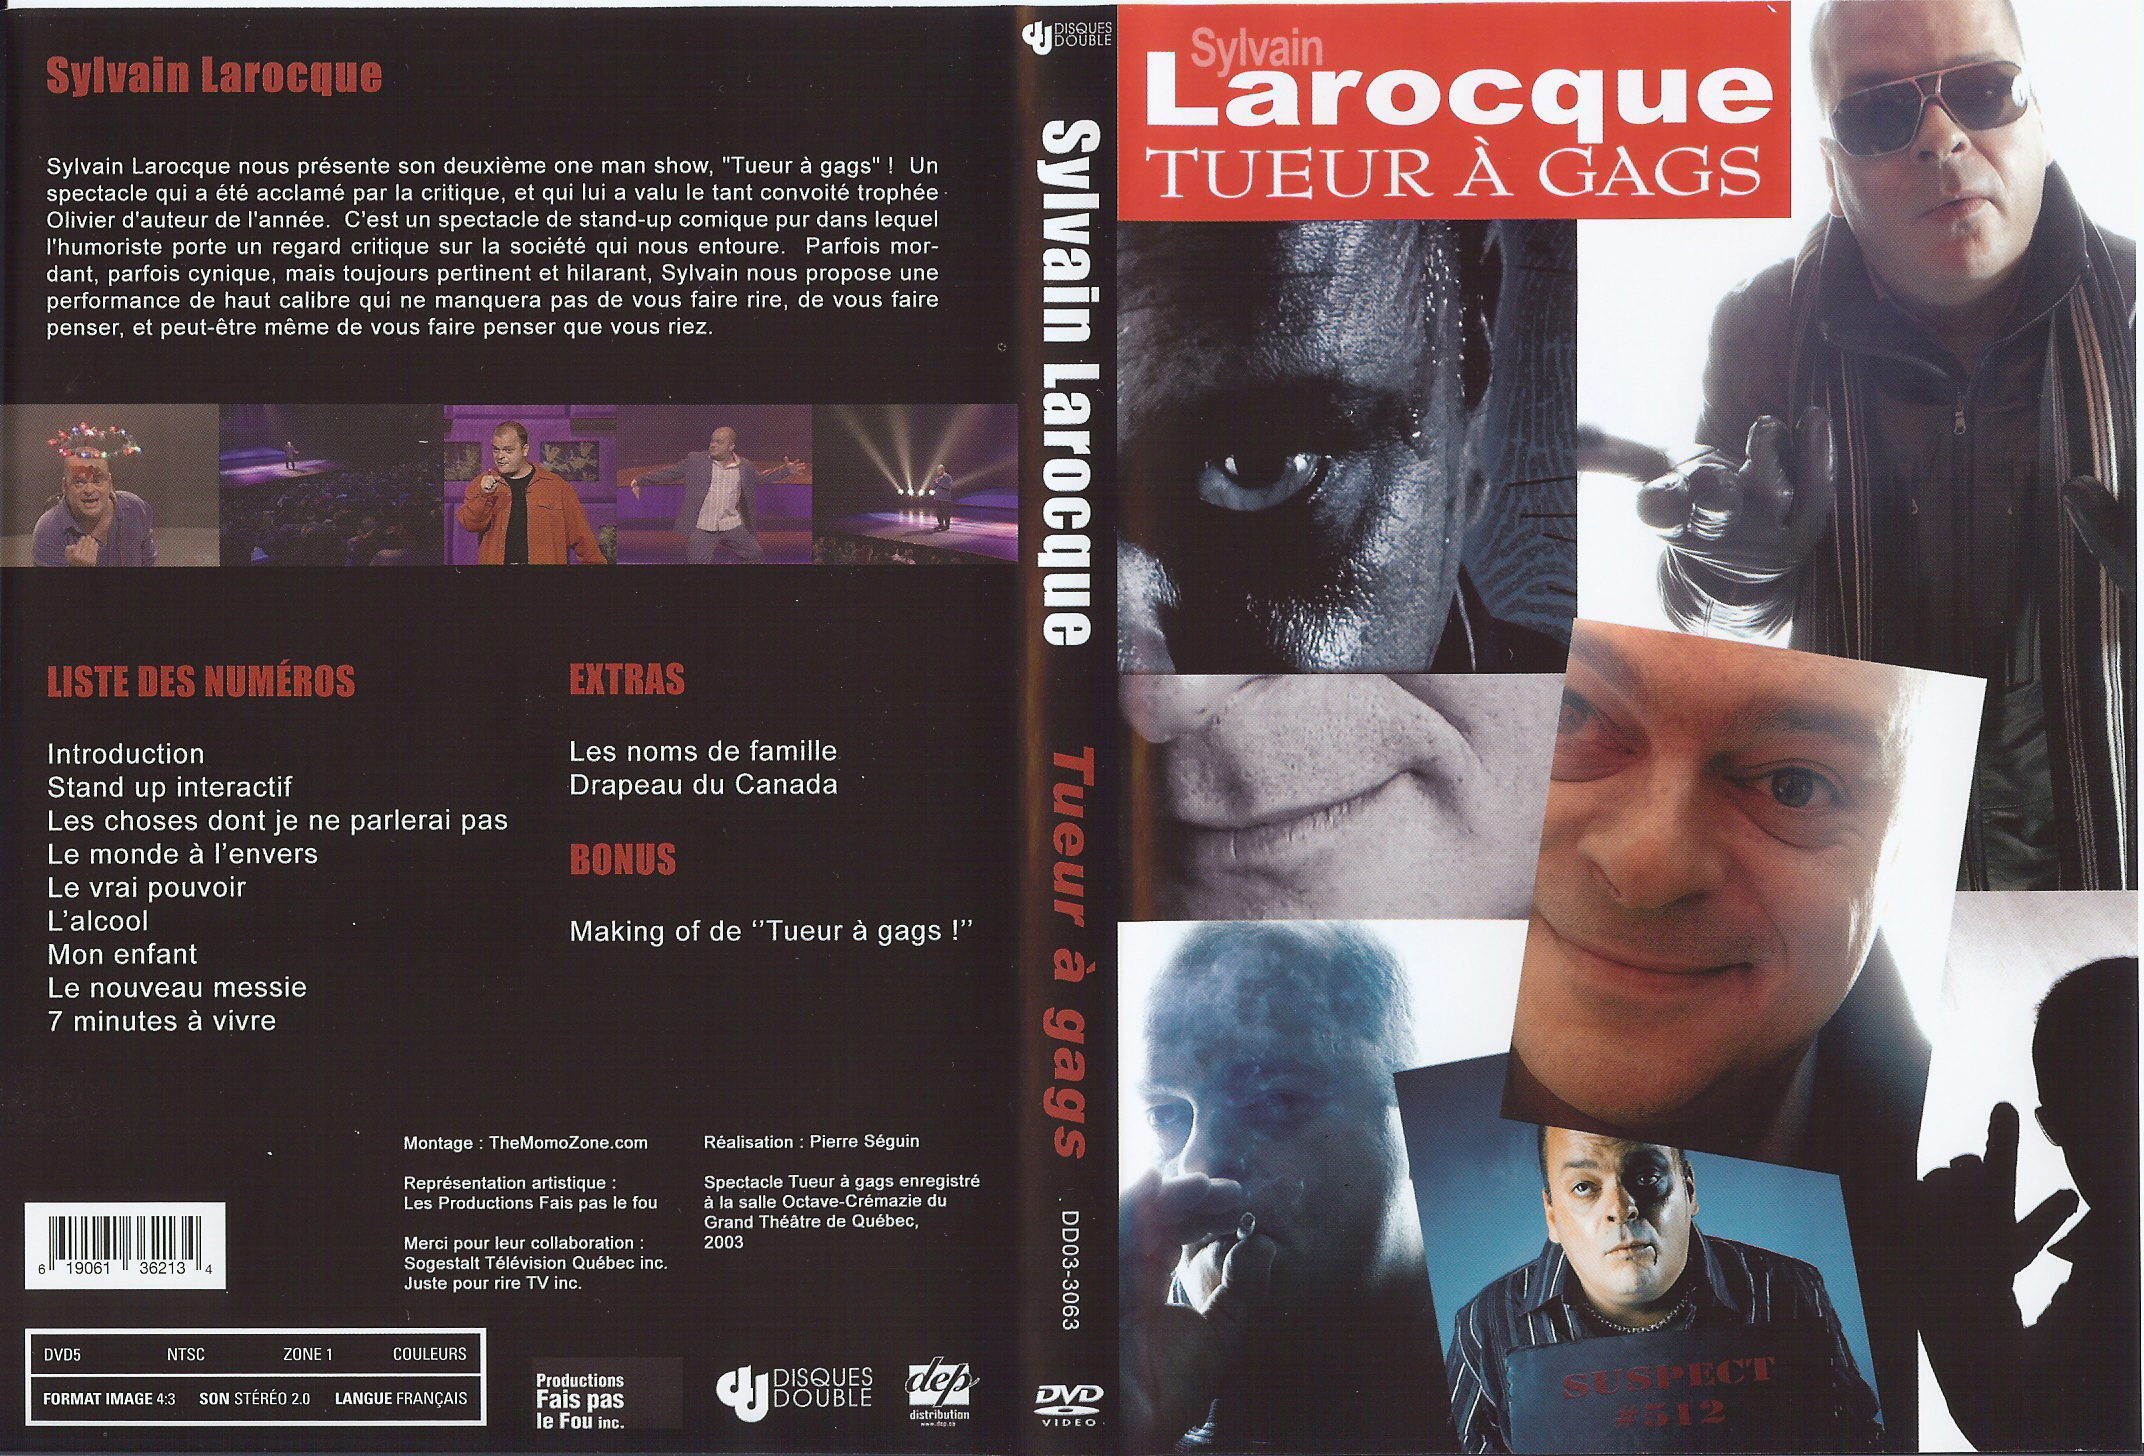 Jaquette DVD Sylvain Larocque - tueurs  gags